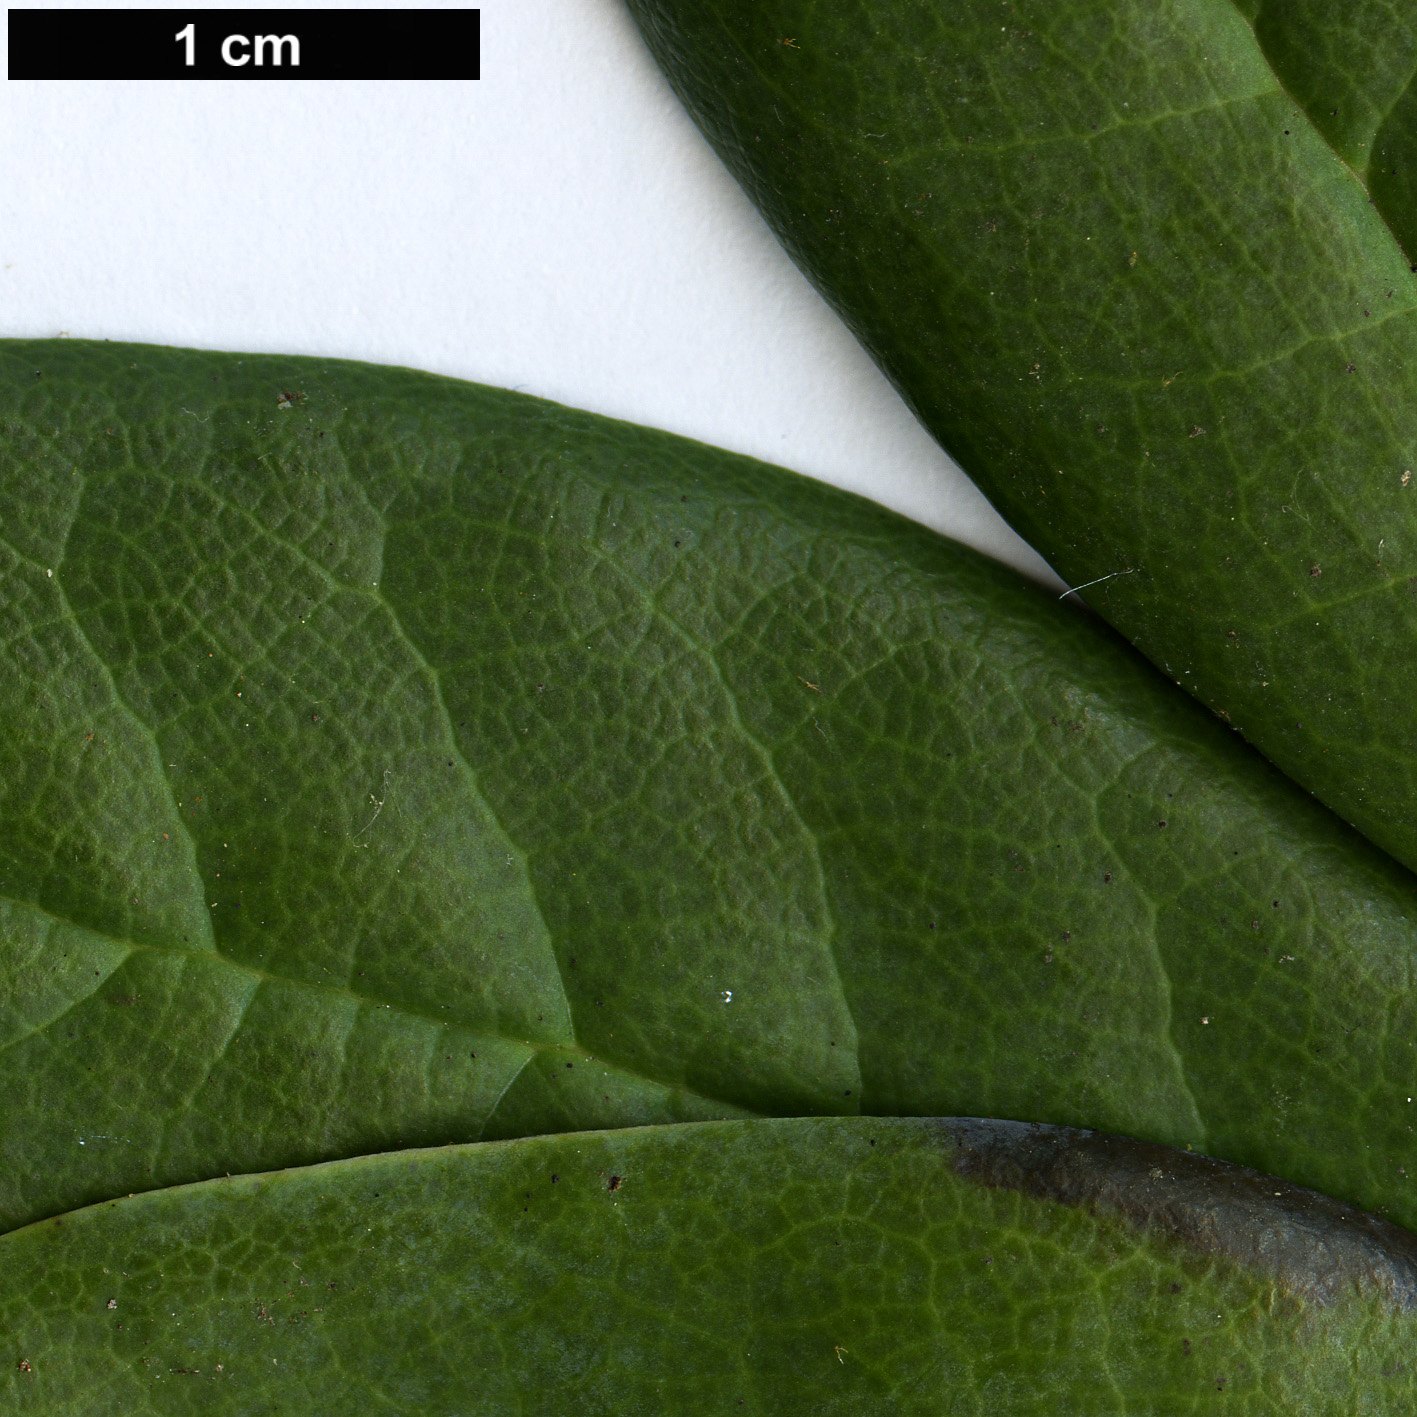 High resolution image: Family: Ericaceae - Genus: Rhododendron - Taxon: campanulatum - SpeciesSub: subsp. aeruginosum